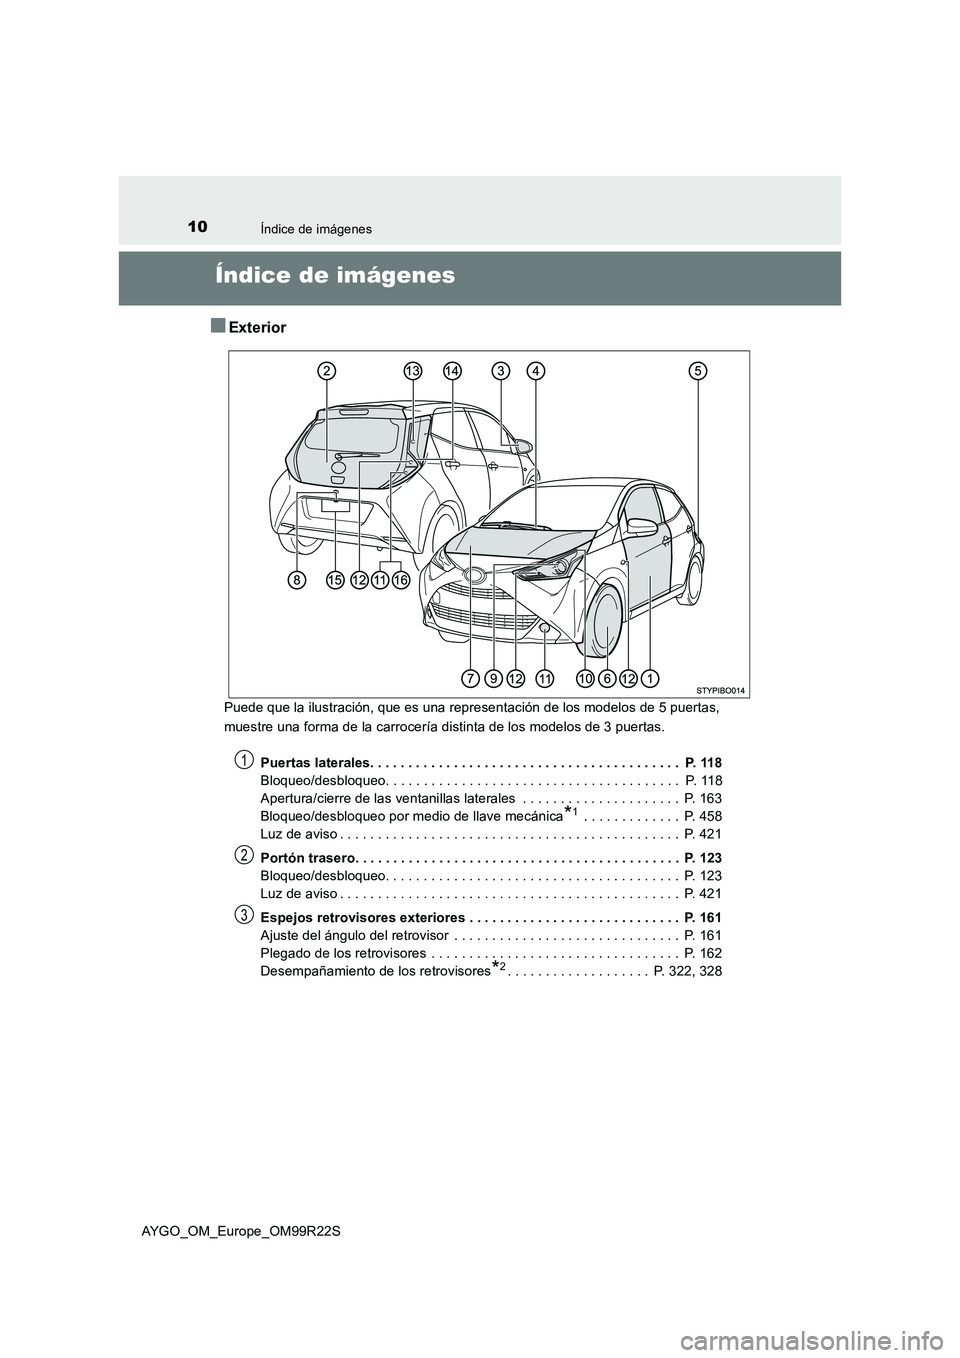 TOYOTA AYGO 2019  Manuale de Empleo (in Spanish) 10Índice de imágenes
AYGO_OM_Europe_OM99R22S
Índice de imágenes
■Exterior
Puede que la ilustración, que es una representación de los modelos de 5 puertas,  
muestre una forma de la carrocería